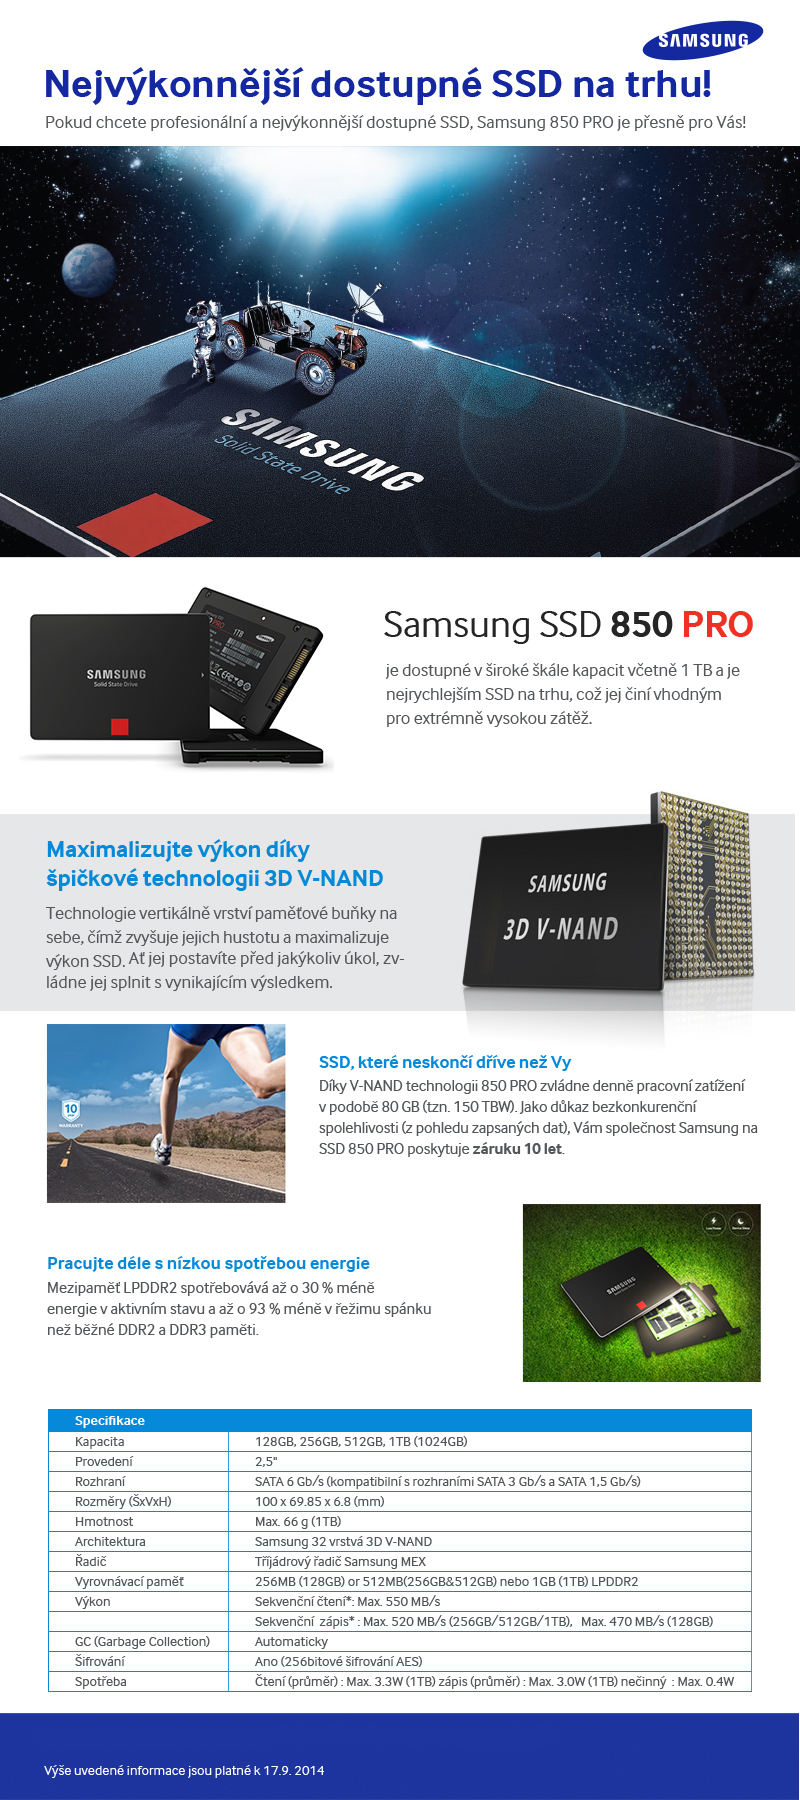 Nejvýkonnější dostupné SSD na trhu!